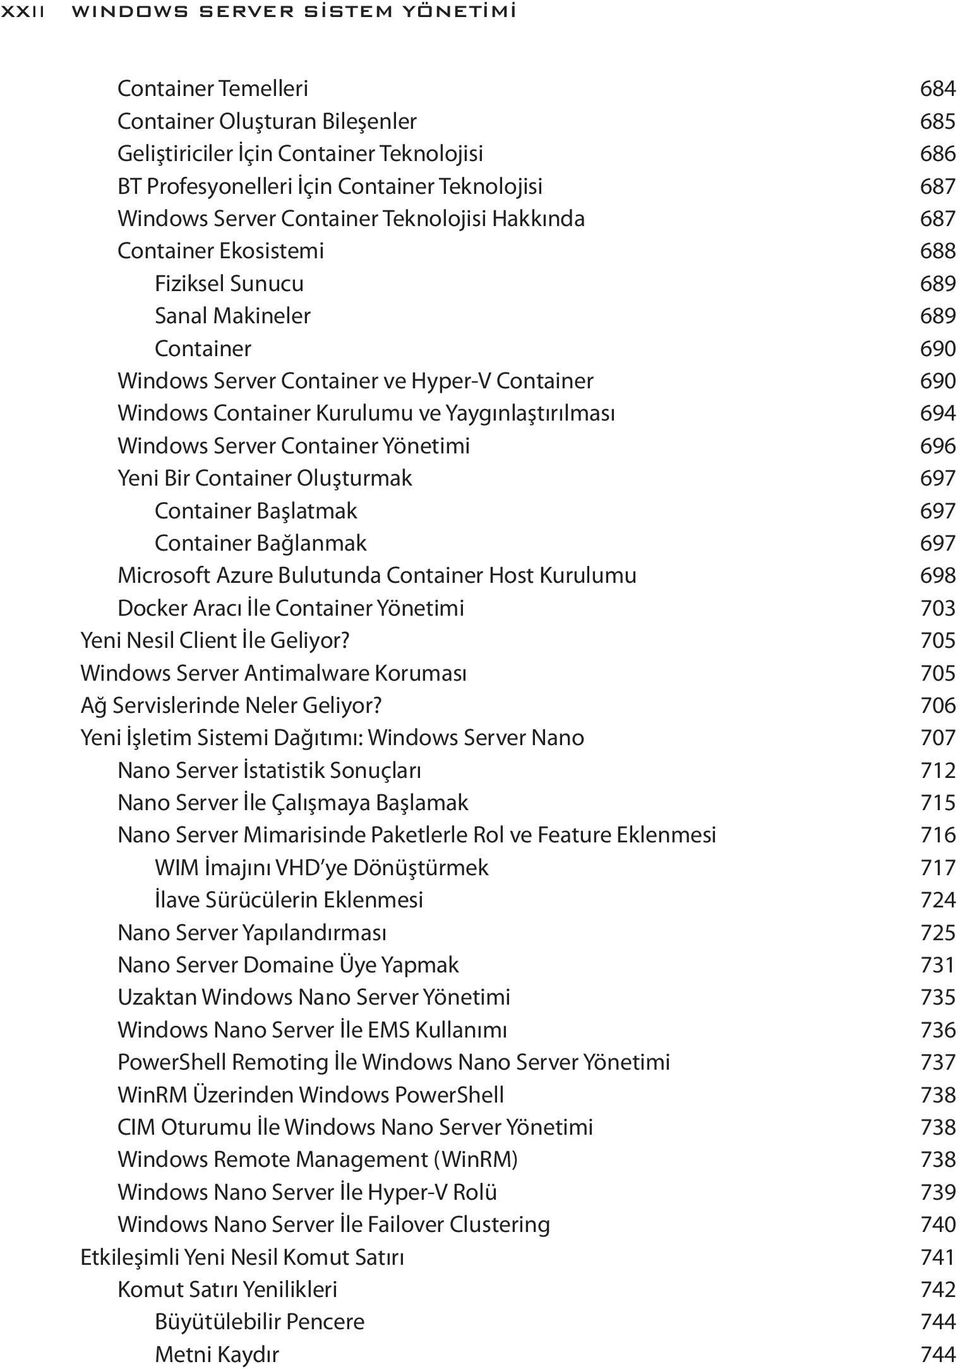 ve Yaygınlaştırılması 694 Windows Server Container Yönetimi 696 Yeni Bir Container Oluşturmak 697 Container Başlatmak 697 Container Bağlanmak 697 Microsoft Azure Bulutunda Container Host Kurulumu 698